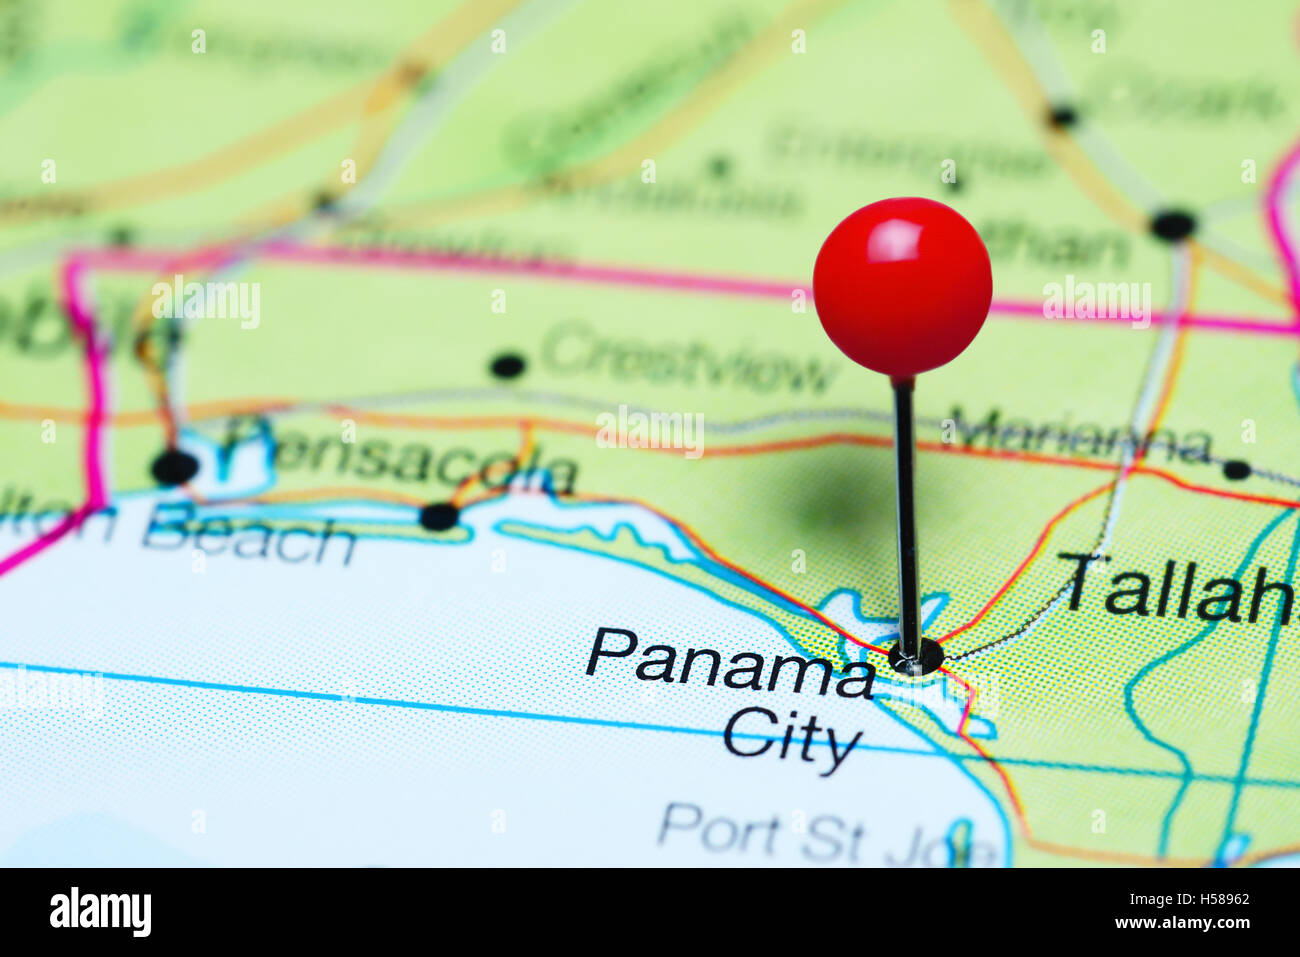 Panama City imperniata su una mappa della Florida, Stati Uniti d'America Foto Stock